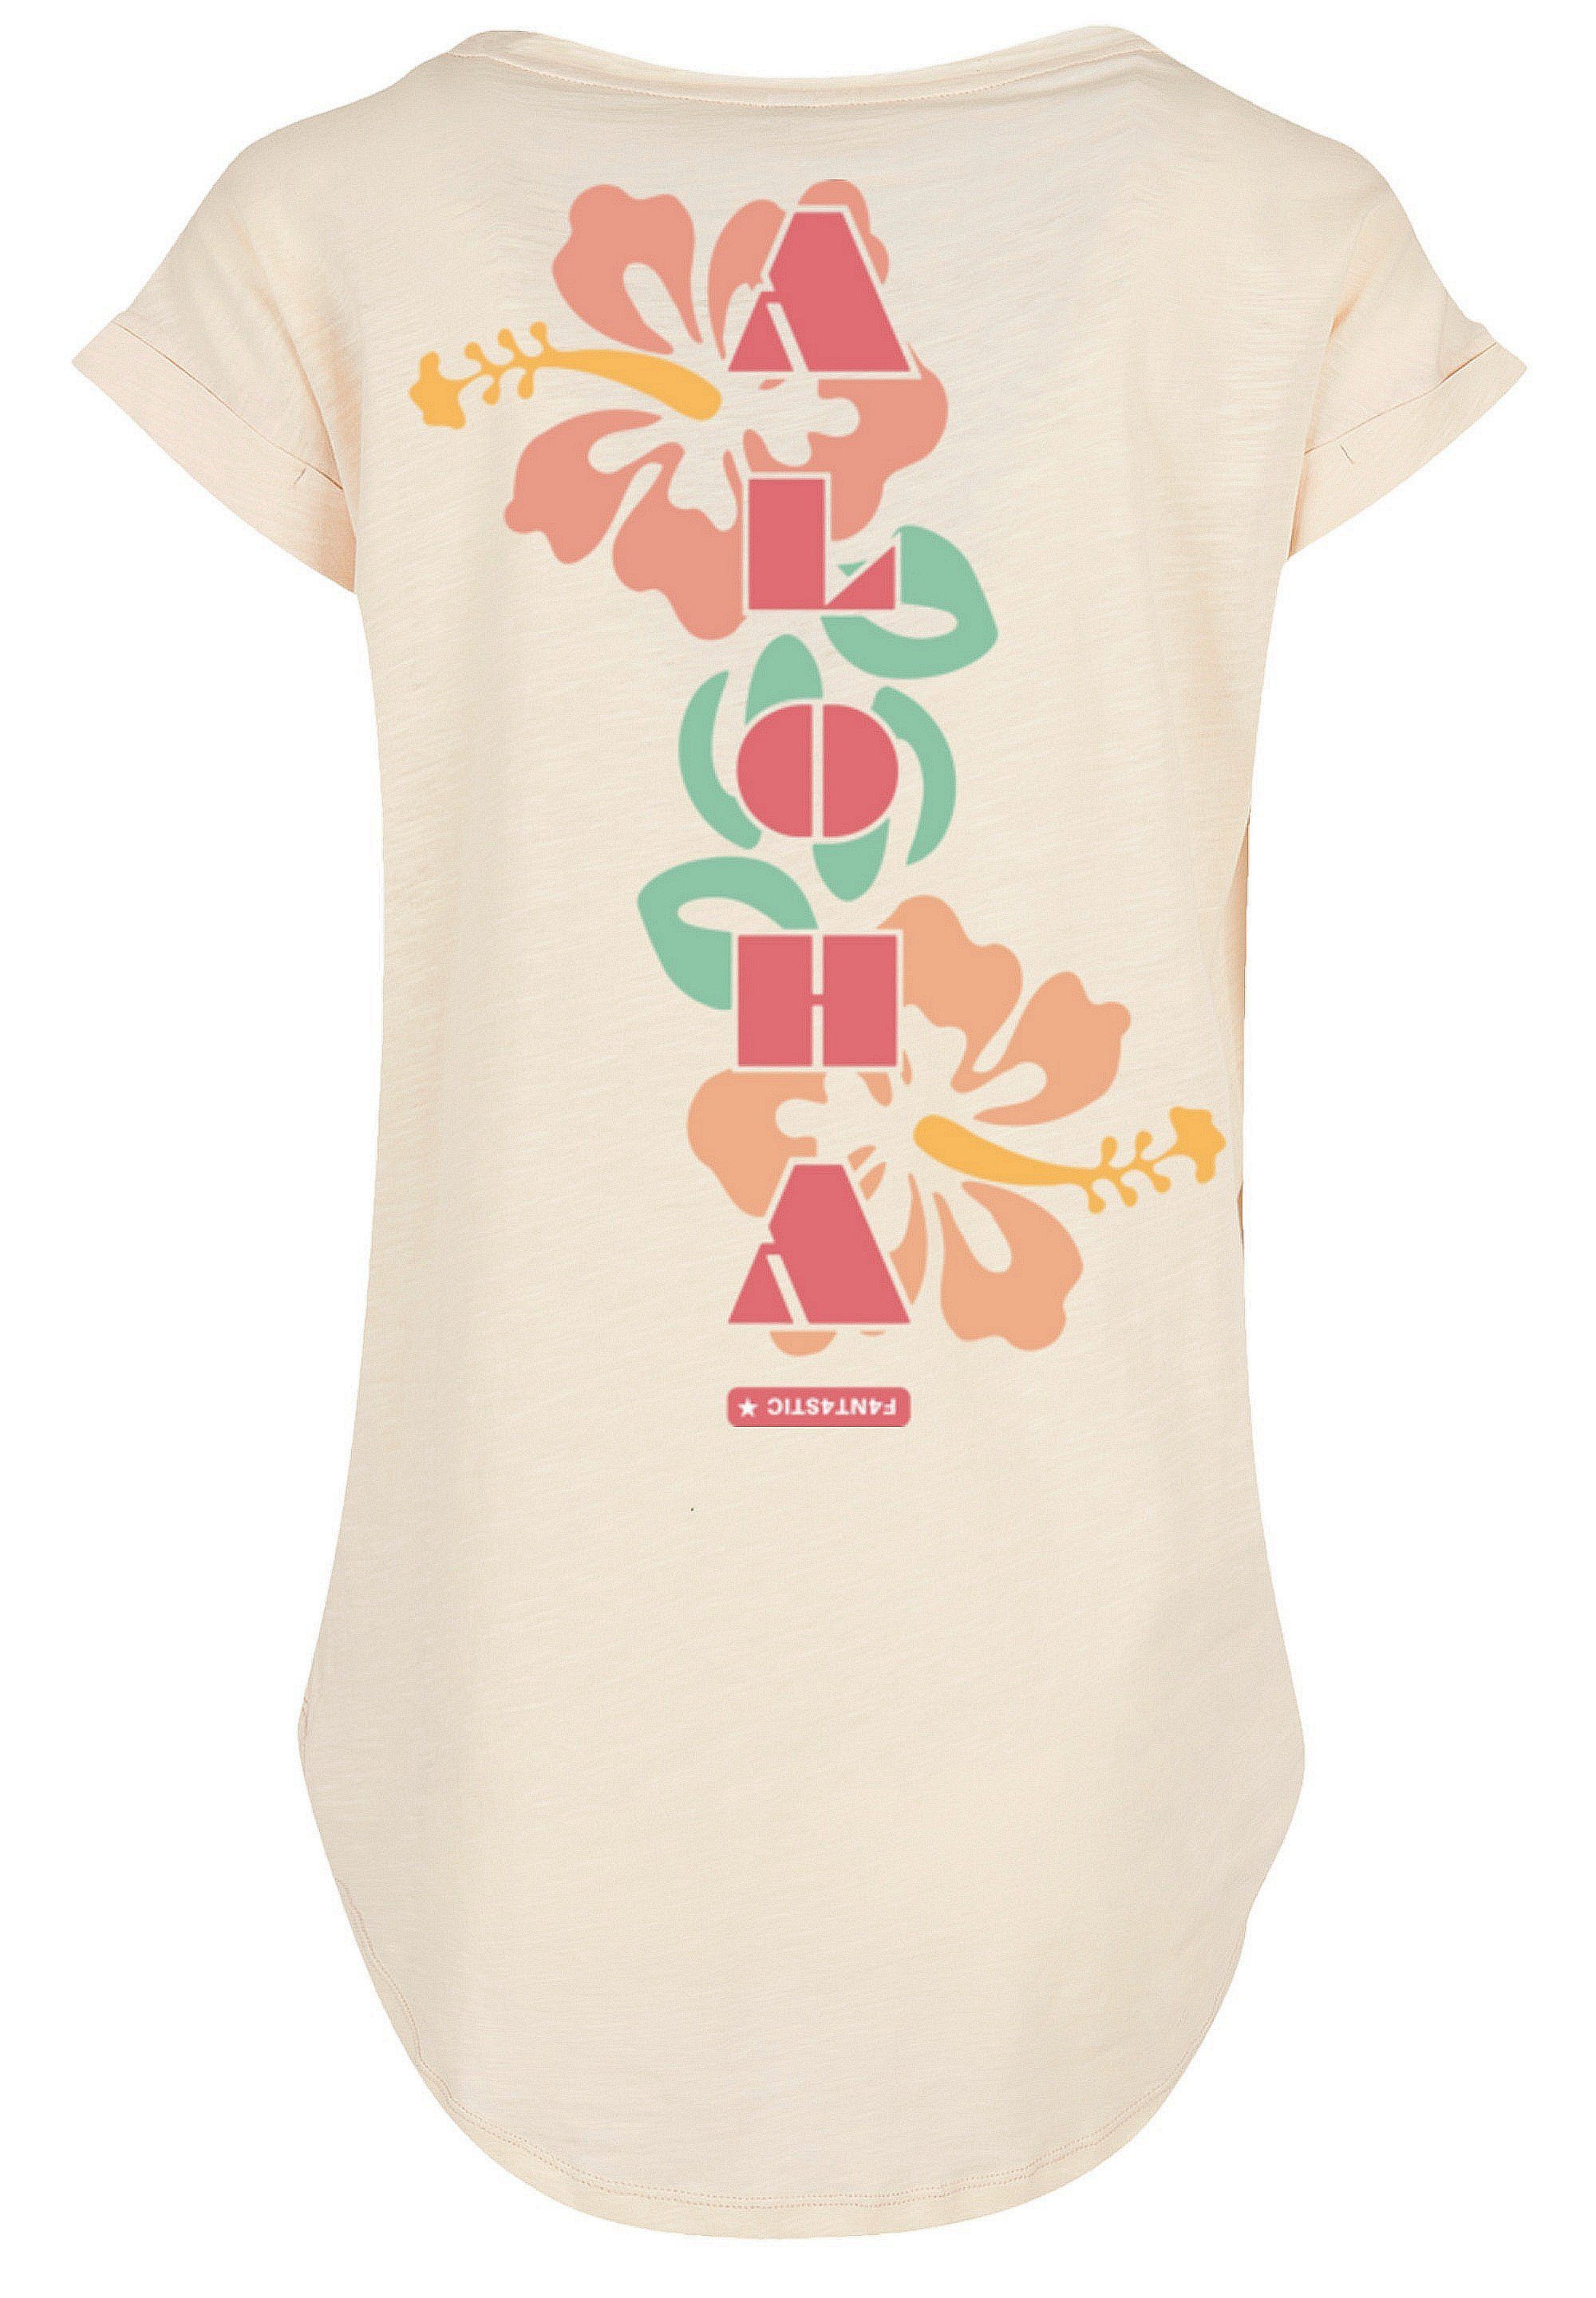 F4NT4STIC Print, mit T-Shirt SIZE Aloha weicher Tragekomfort Sehr hohem Baumwollstoff PLUS